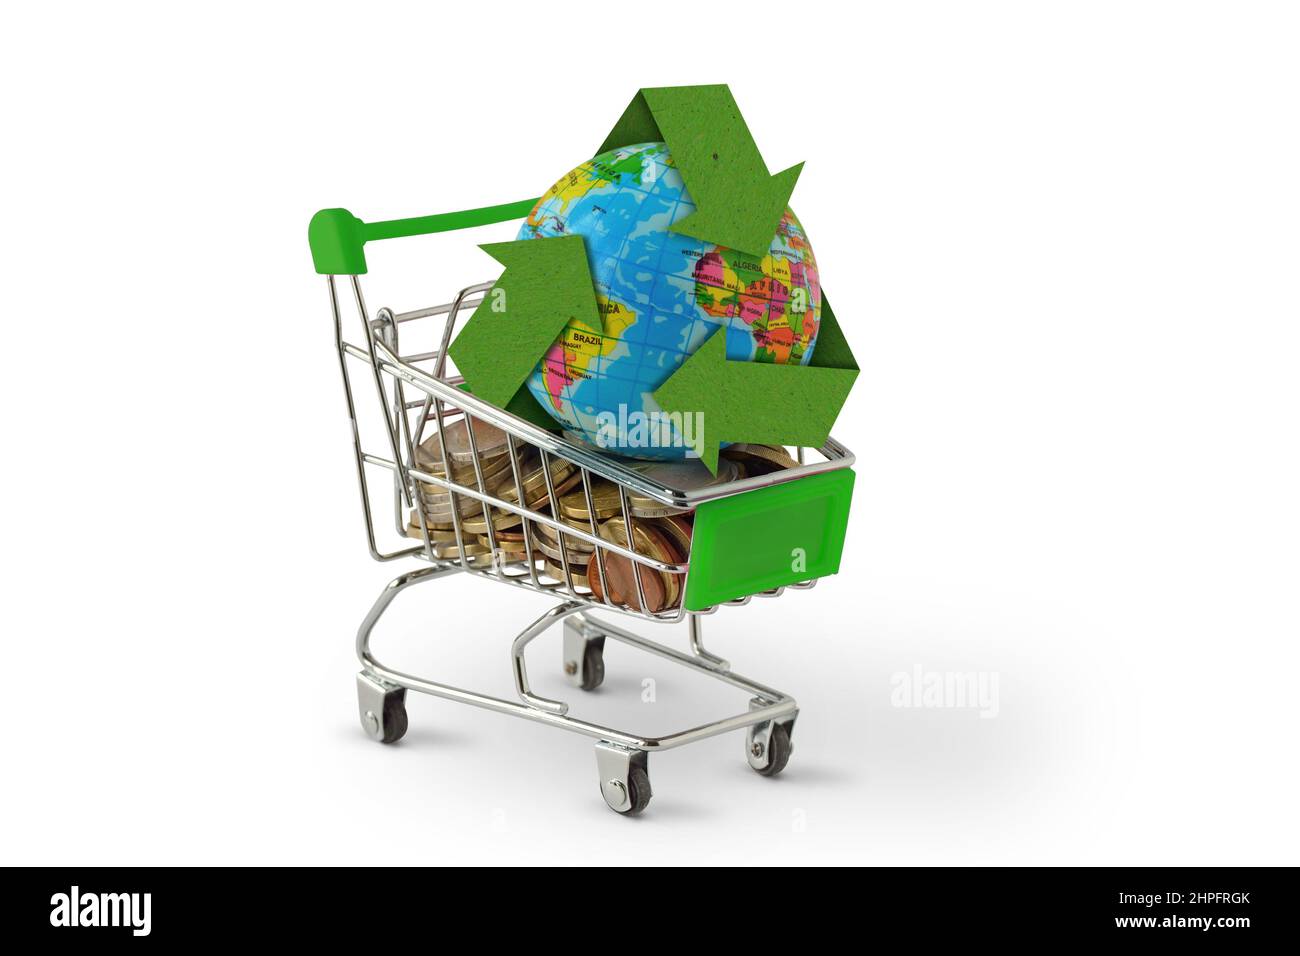 Planète Terre avec symbole de recyclage sur le panier - concept de conscience environnementale et d'achats écologiques Banque D'Images